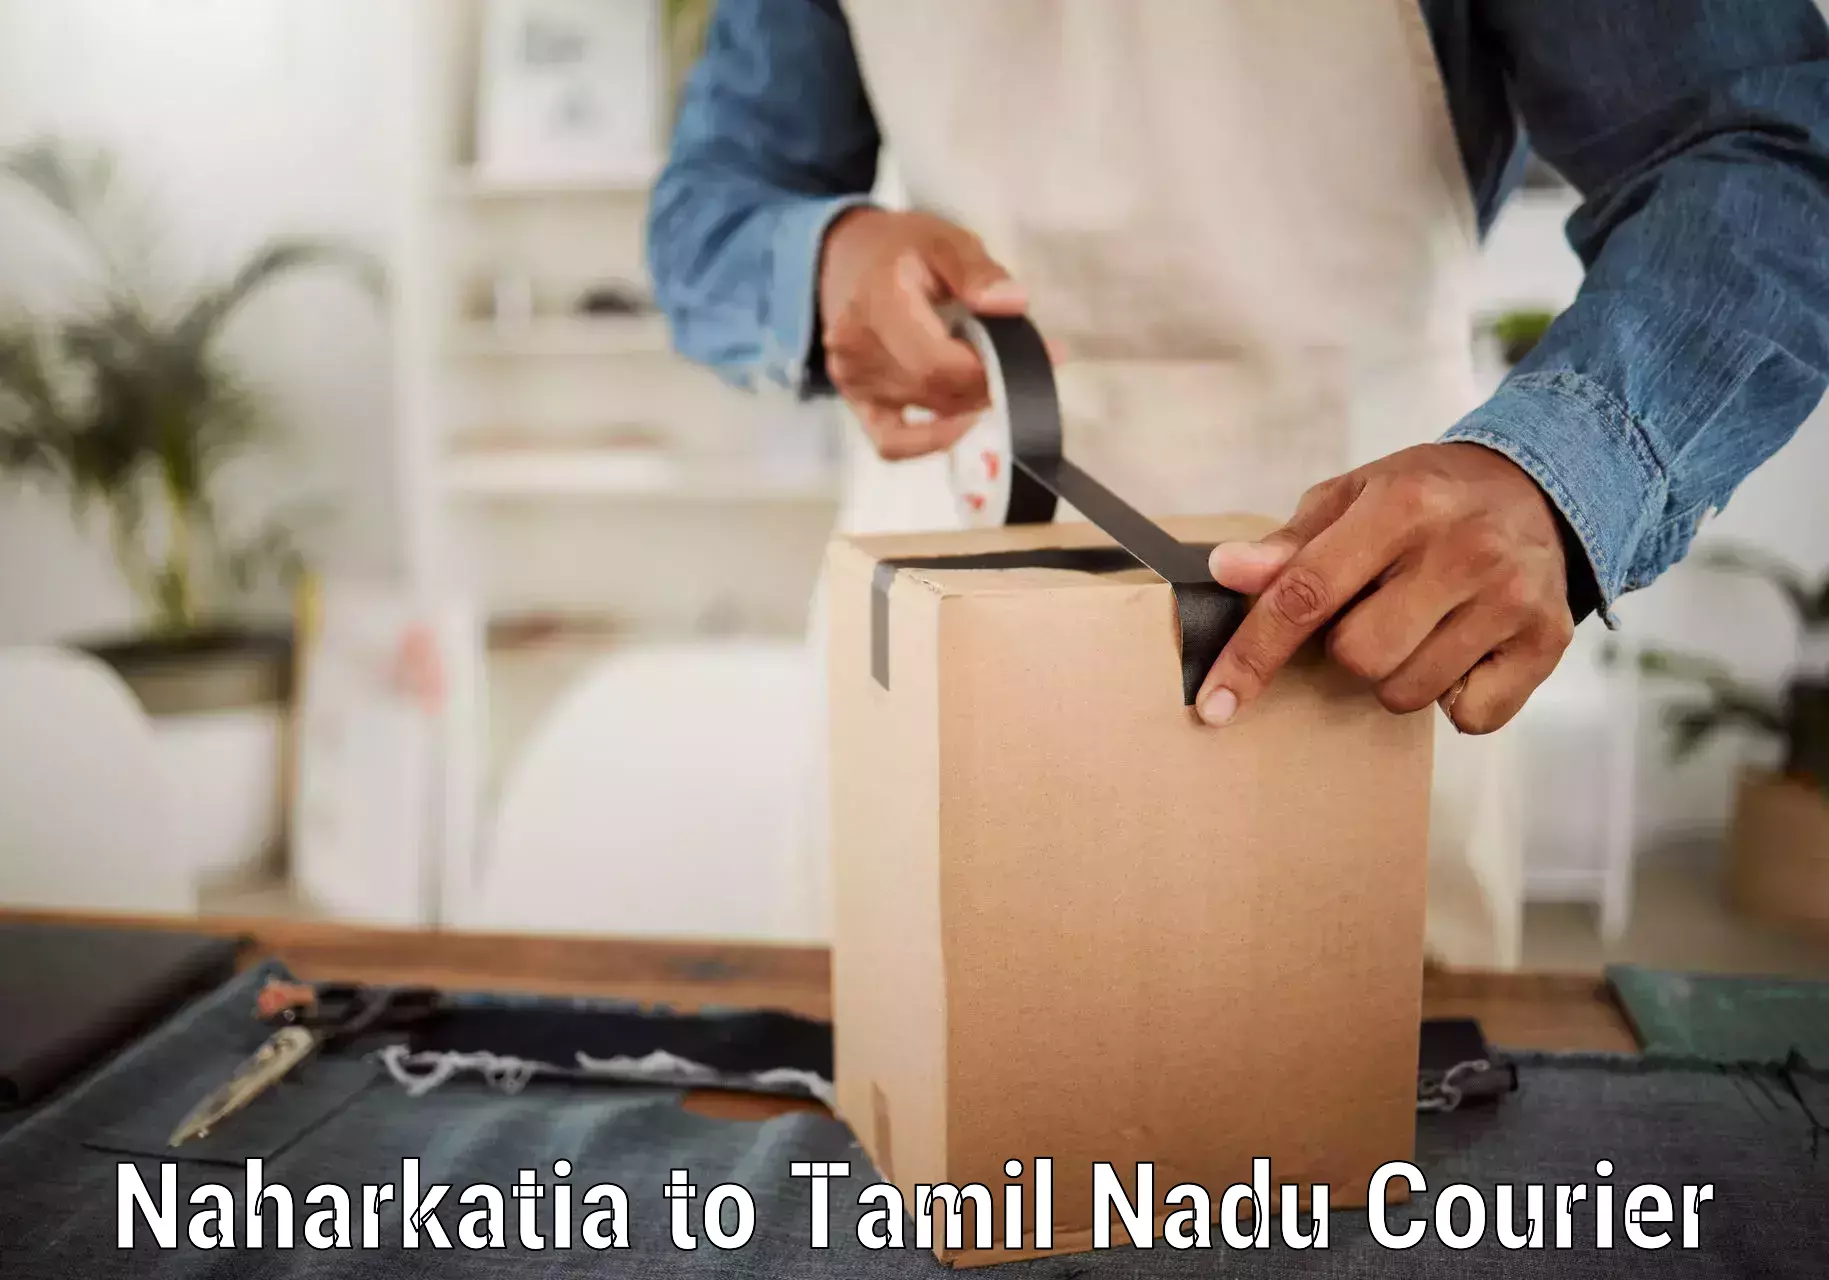 Urgent courier needs Naharkatia to Tamil Nadu